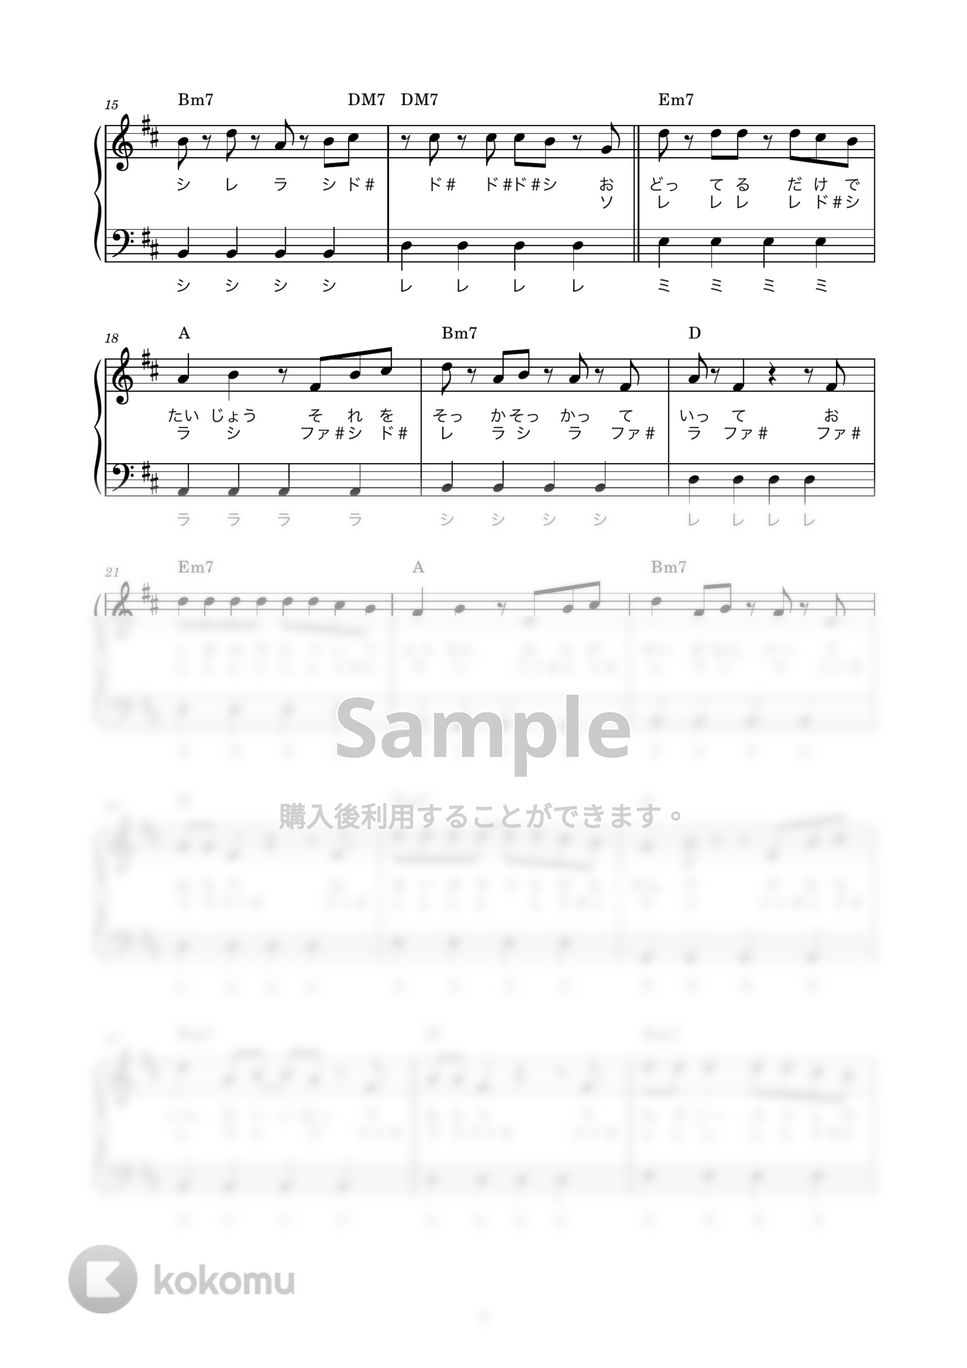 フレデリック - オドループ (かんたん / 歌詞付き / ドレミ付き / 初心者) by piano.tokyo